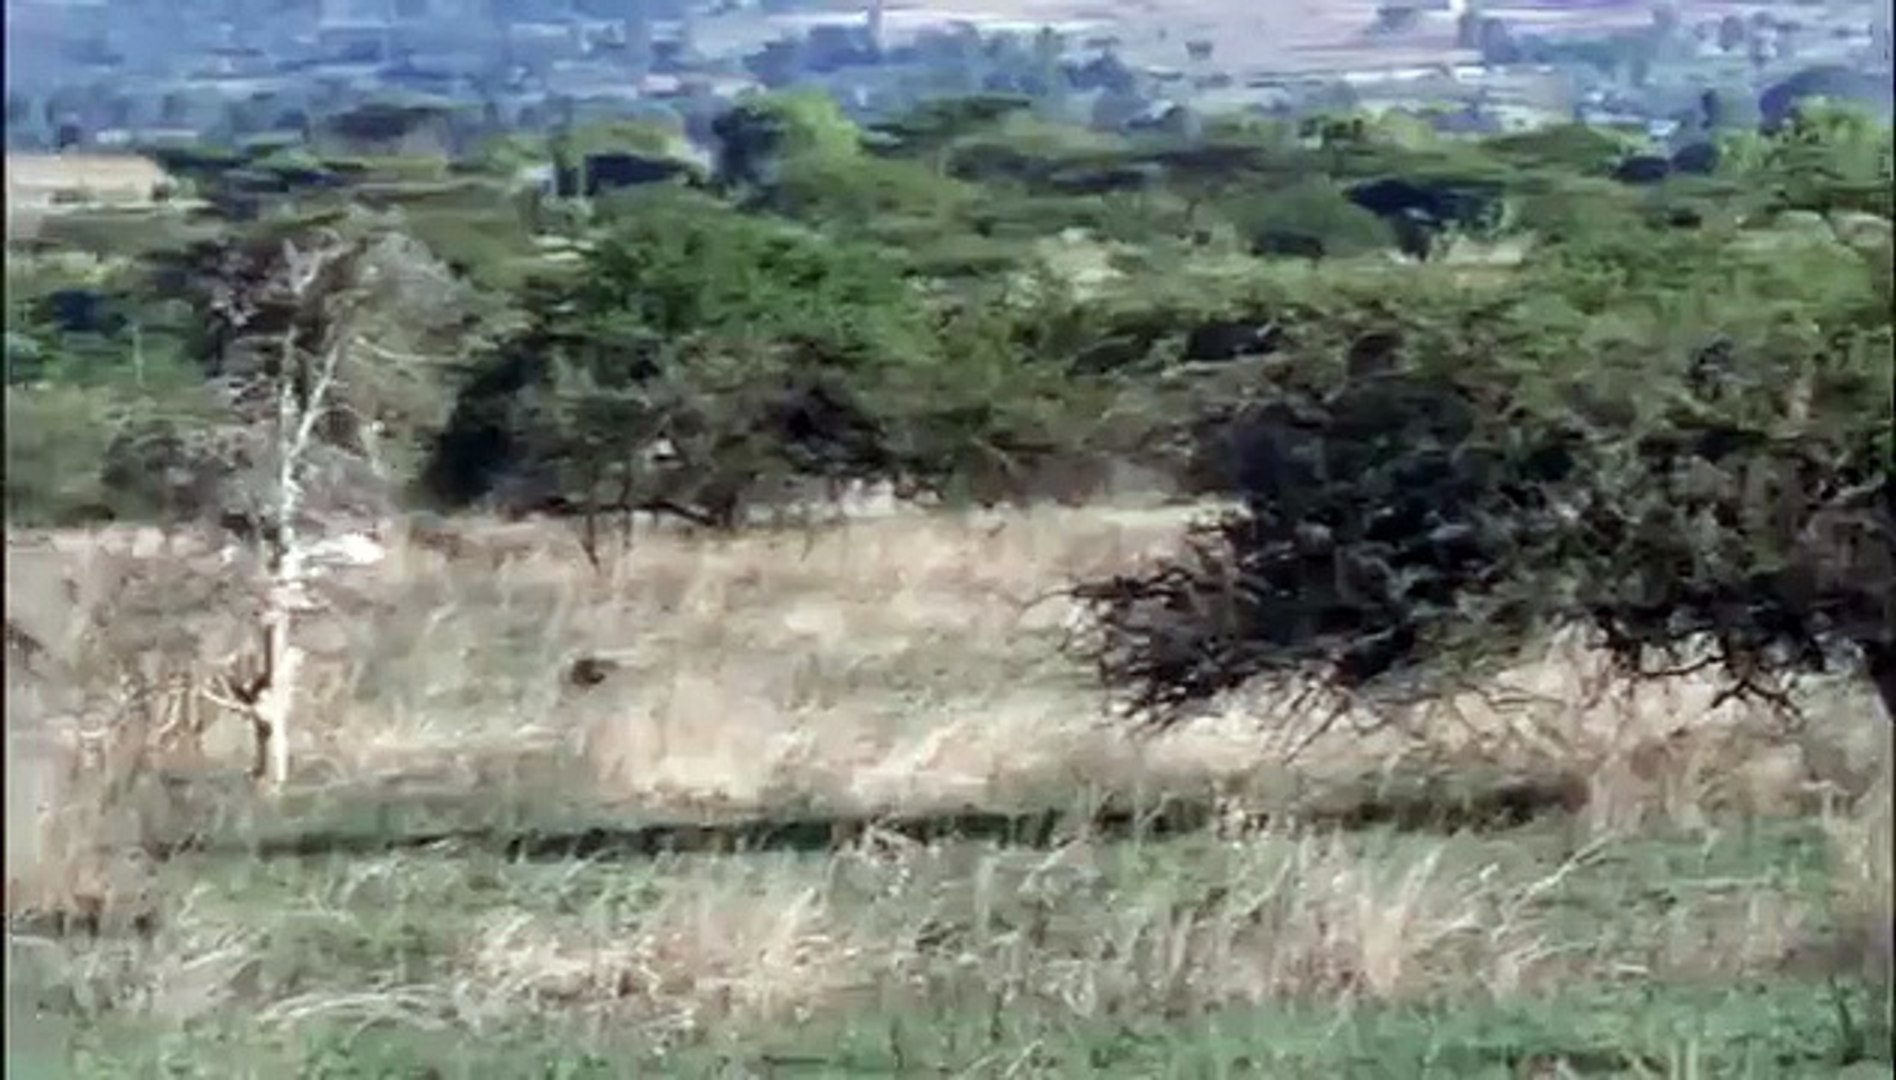 cheetahs hunt Ostrich